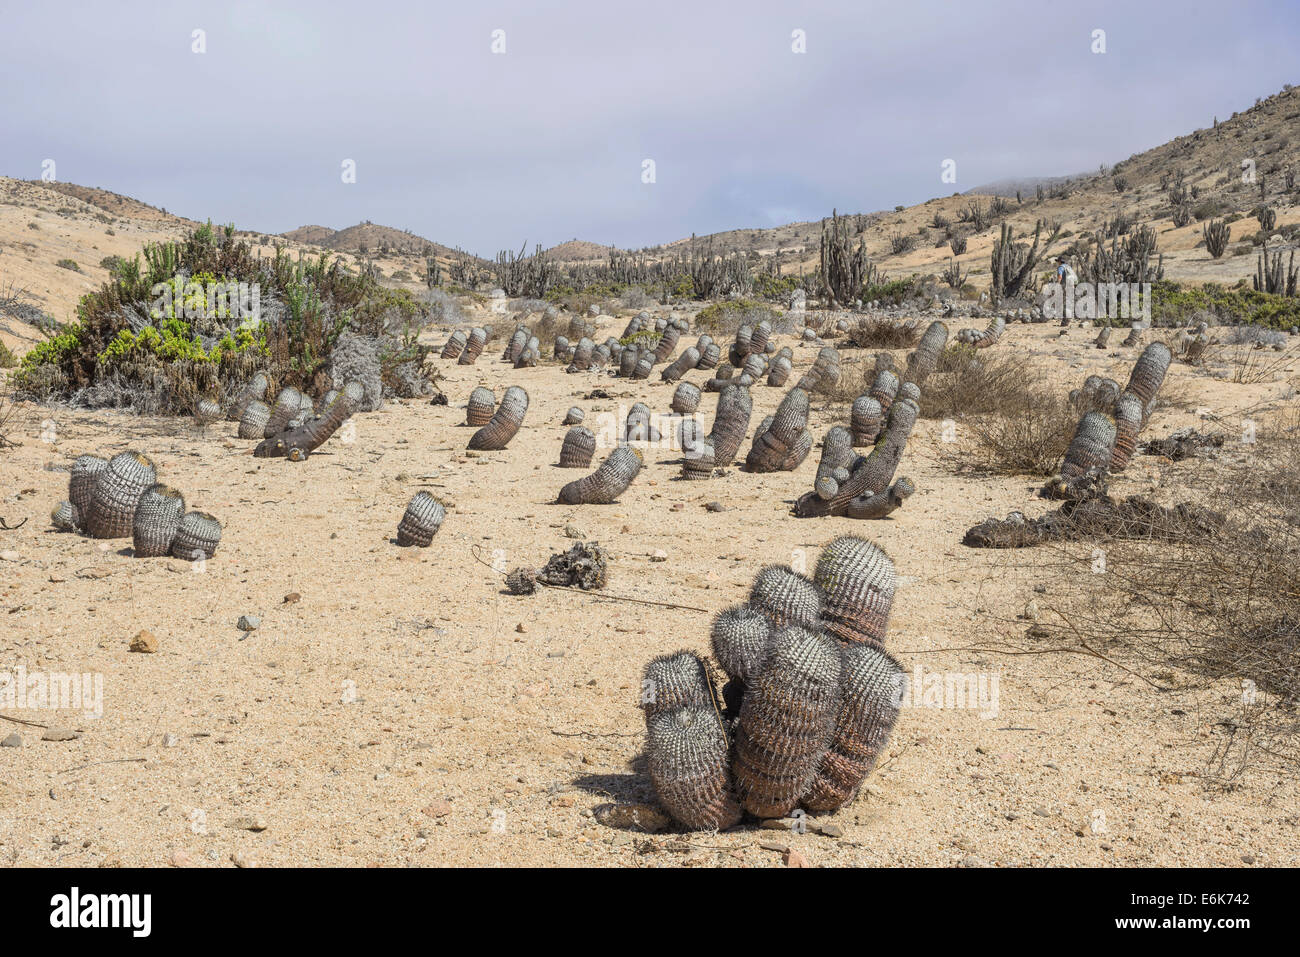 Copiapoa Cacti (Copiapoa columna-albain) growing in a barren landscape, Pan de Azúcar National Park, Atacama Region, Chile Stock Photo